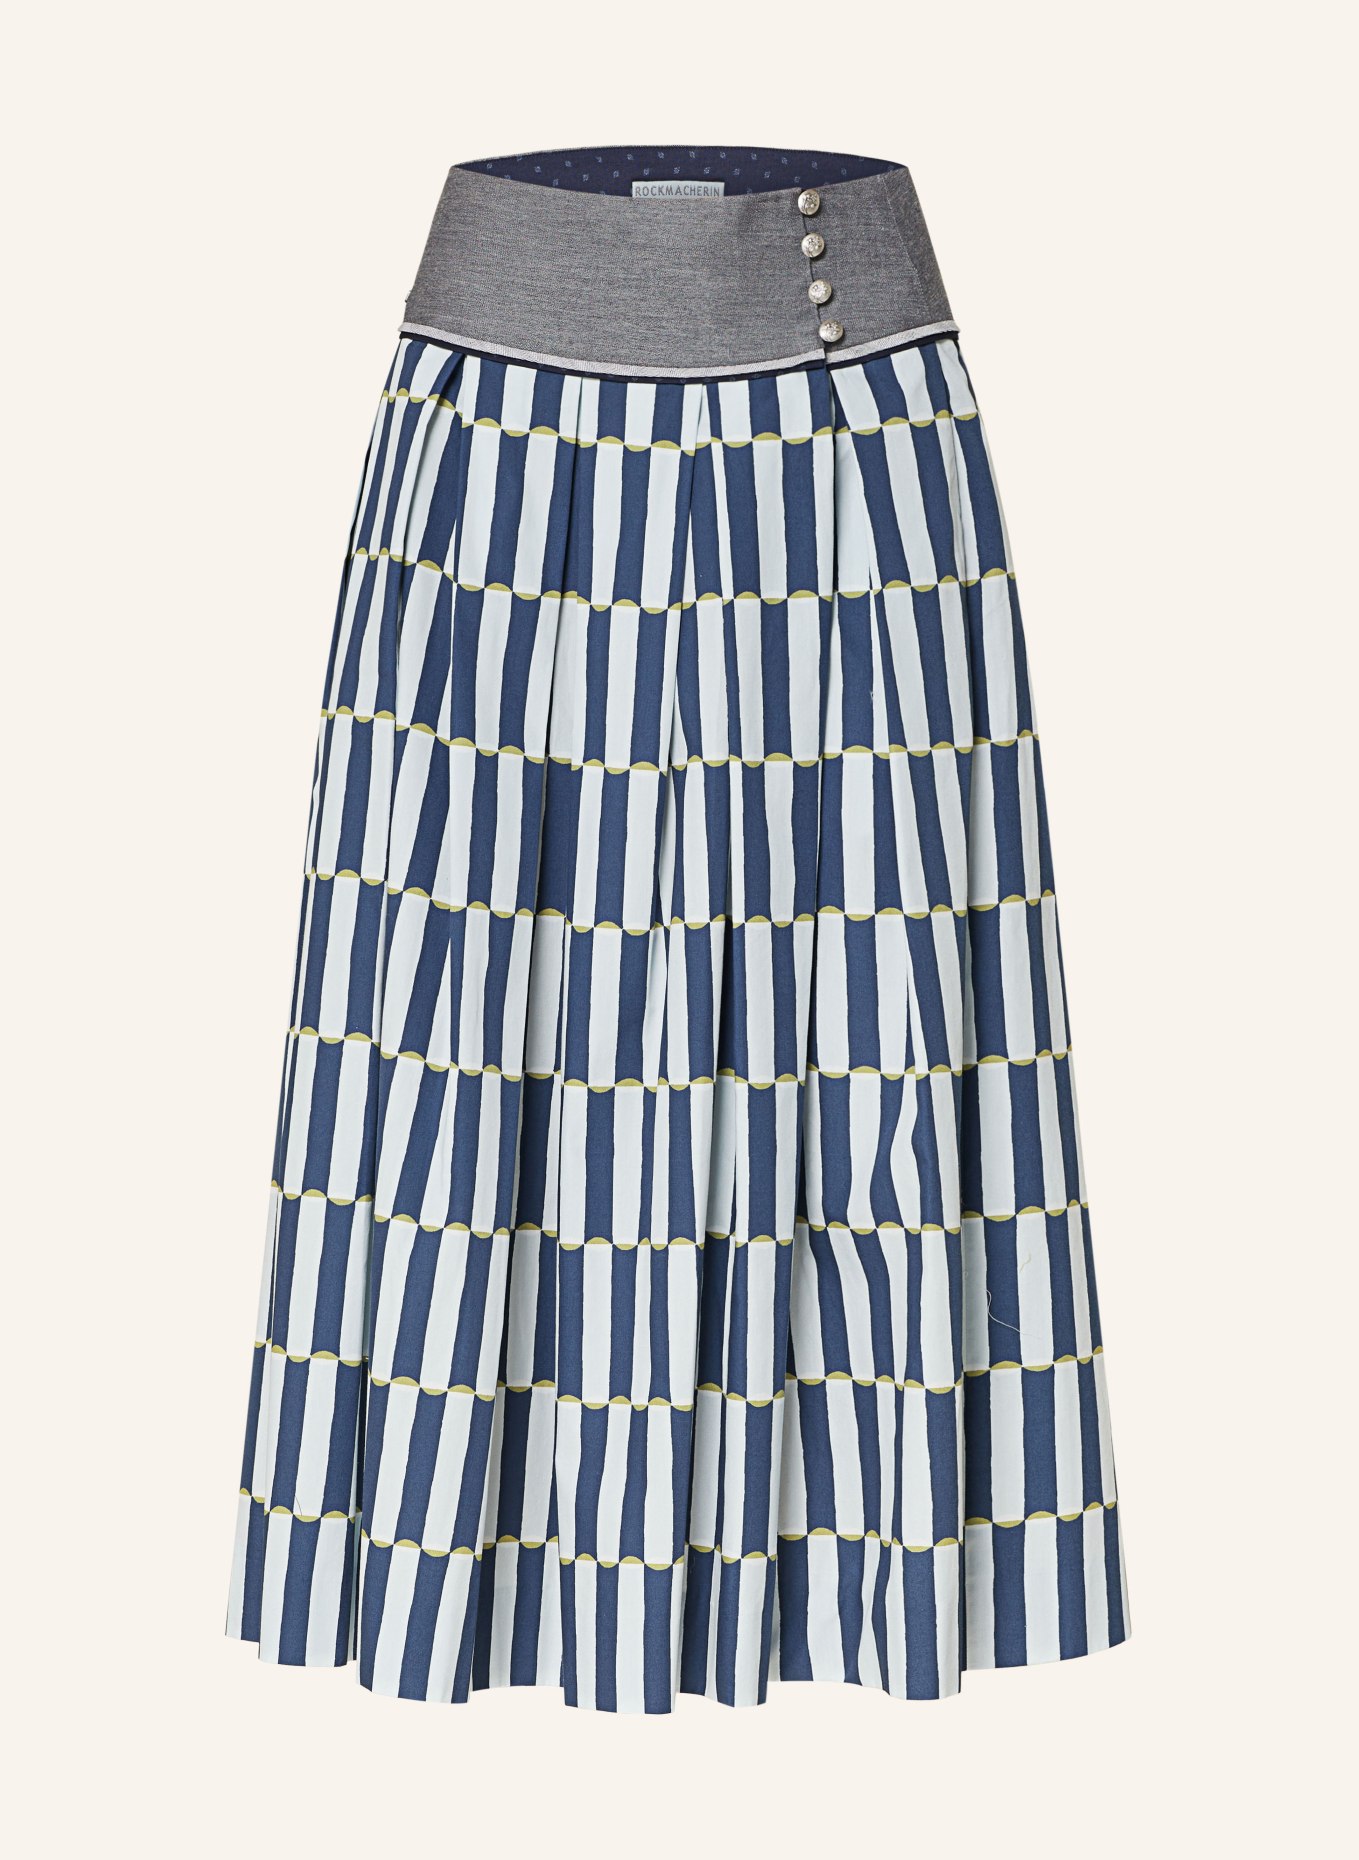 ROCKMACHERIN Trachten skirt WOIKN, Color: DARK BLUE/ LIGHT BLUE (Image 1)